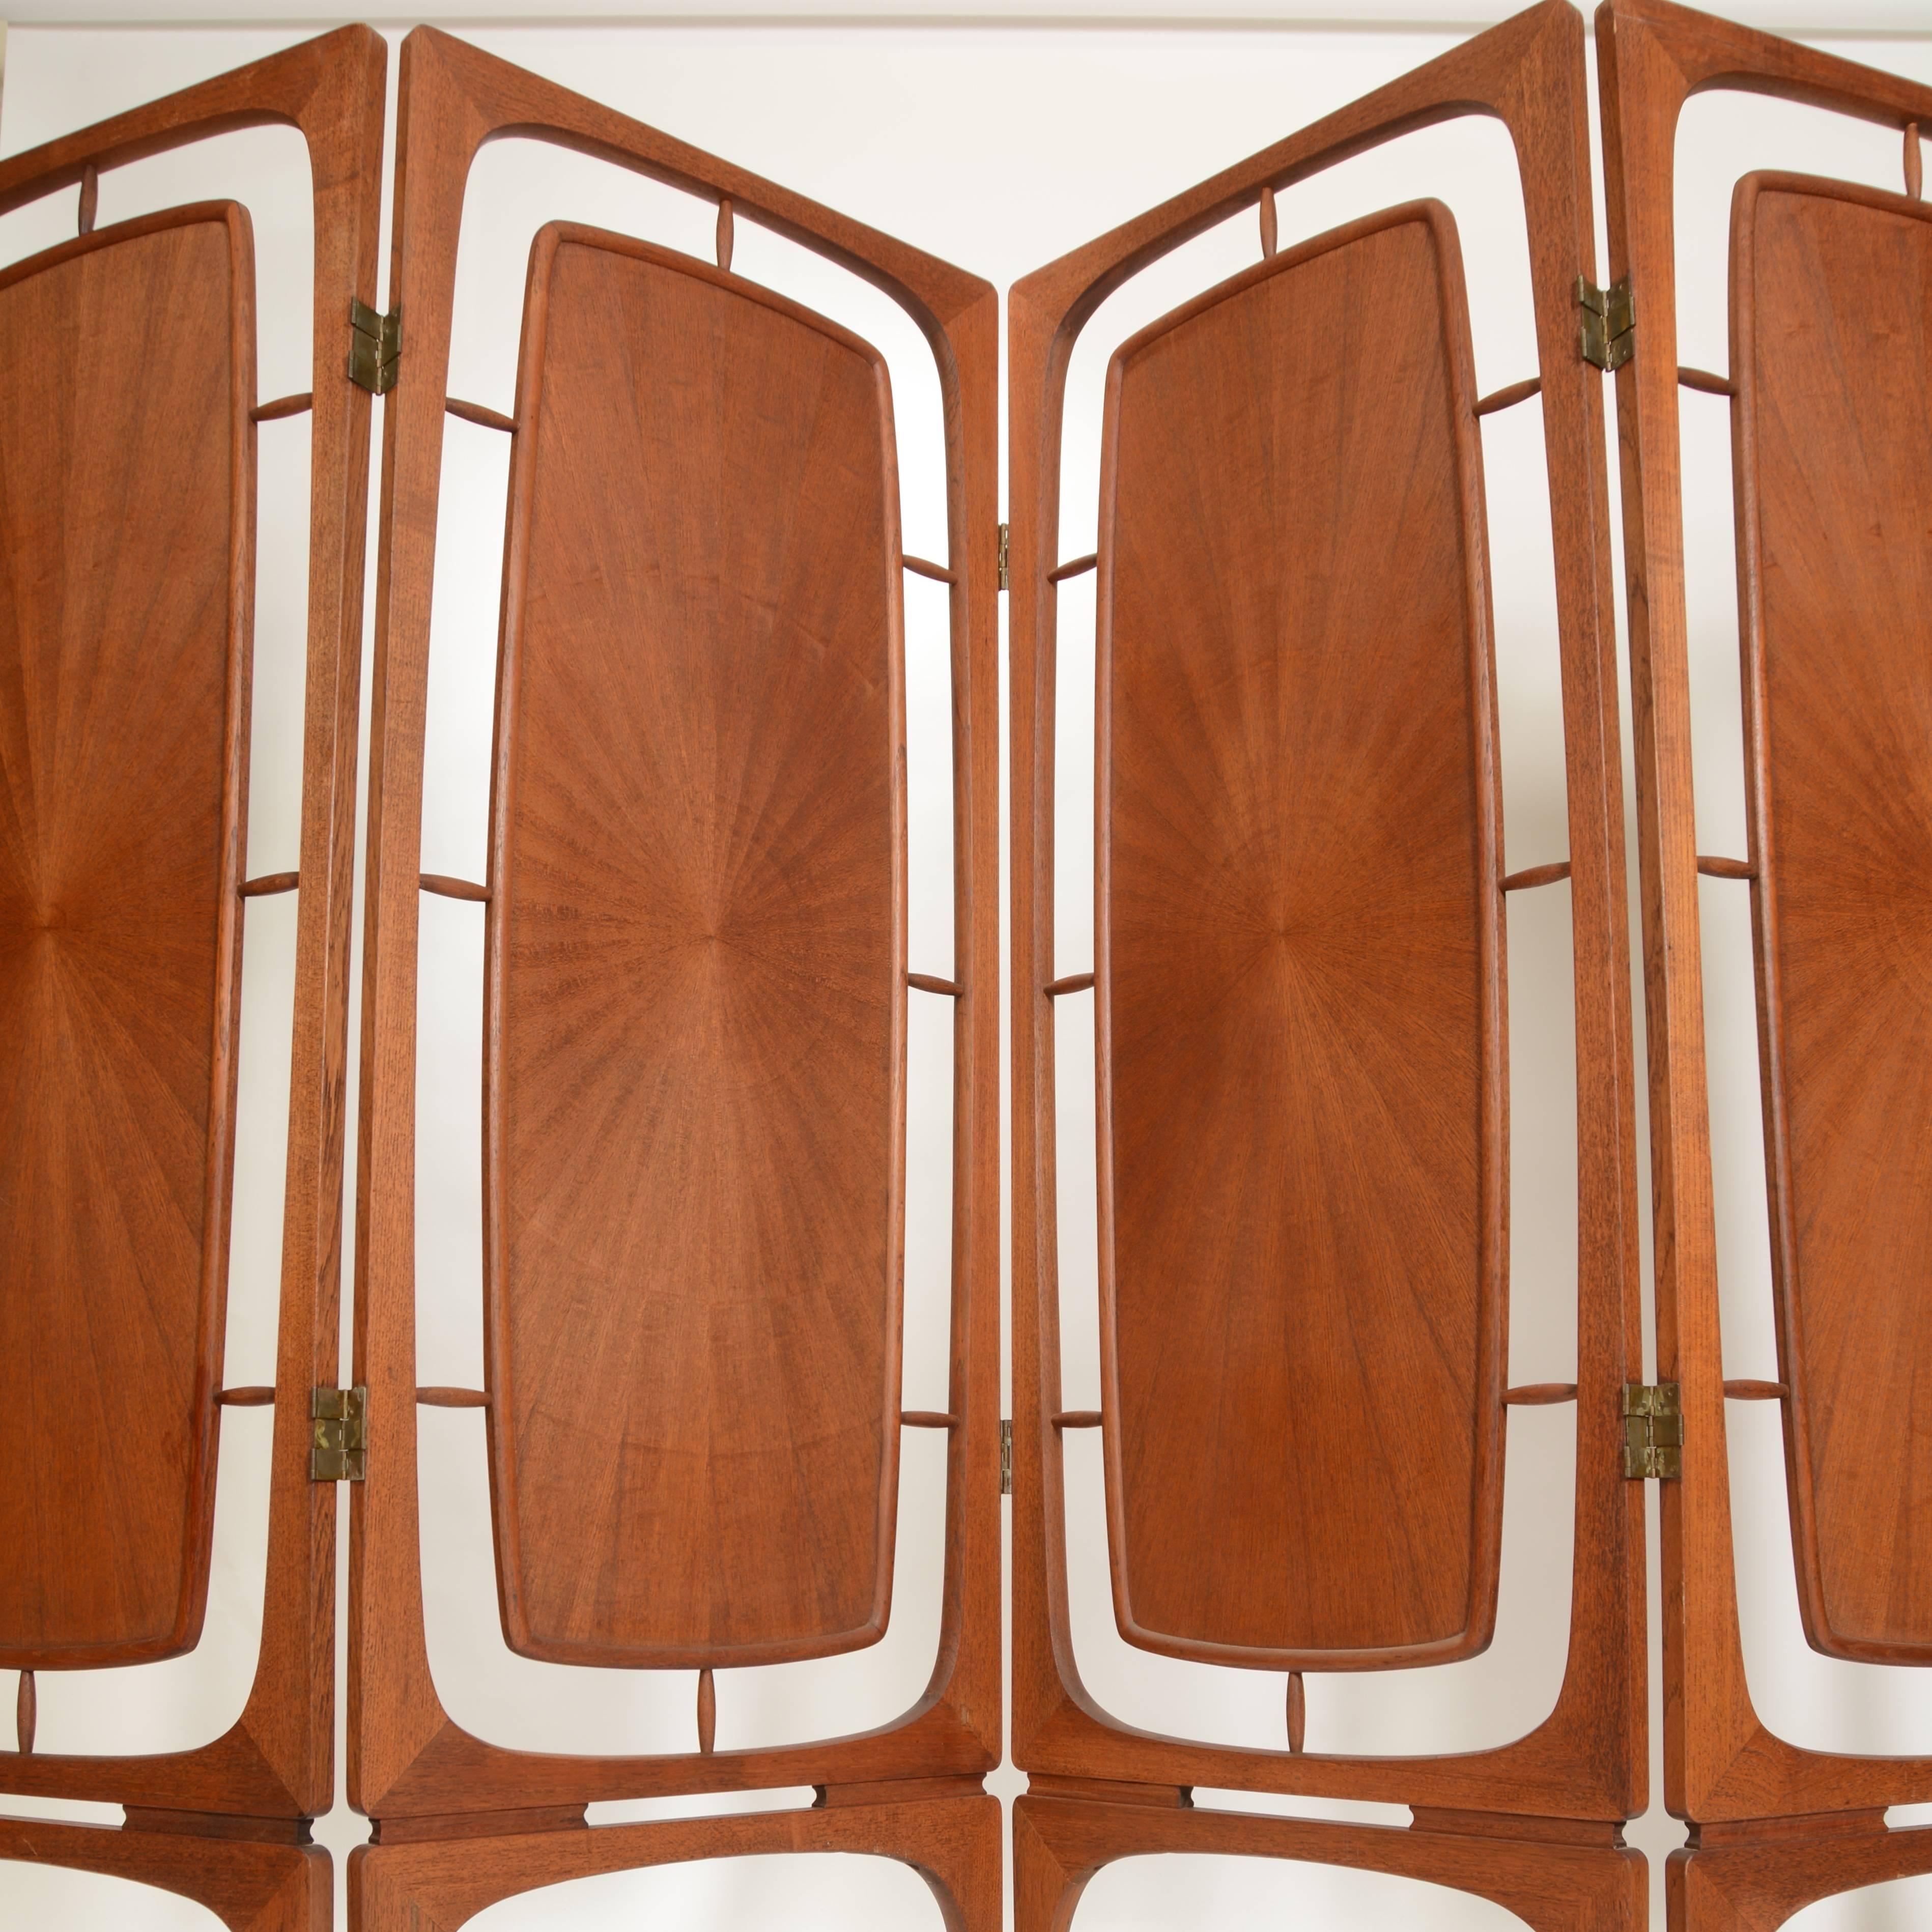 Scandinavian Modern Sculptural Four-Panel Folding Teak Screen Room Divider